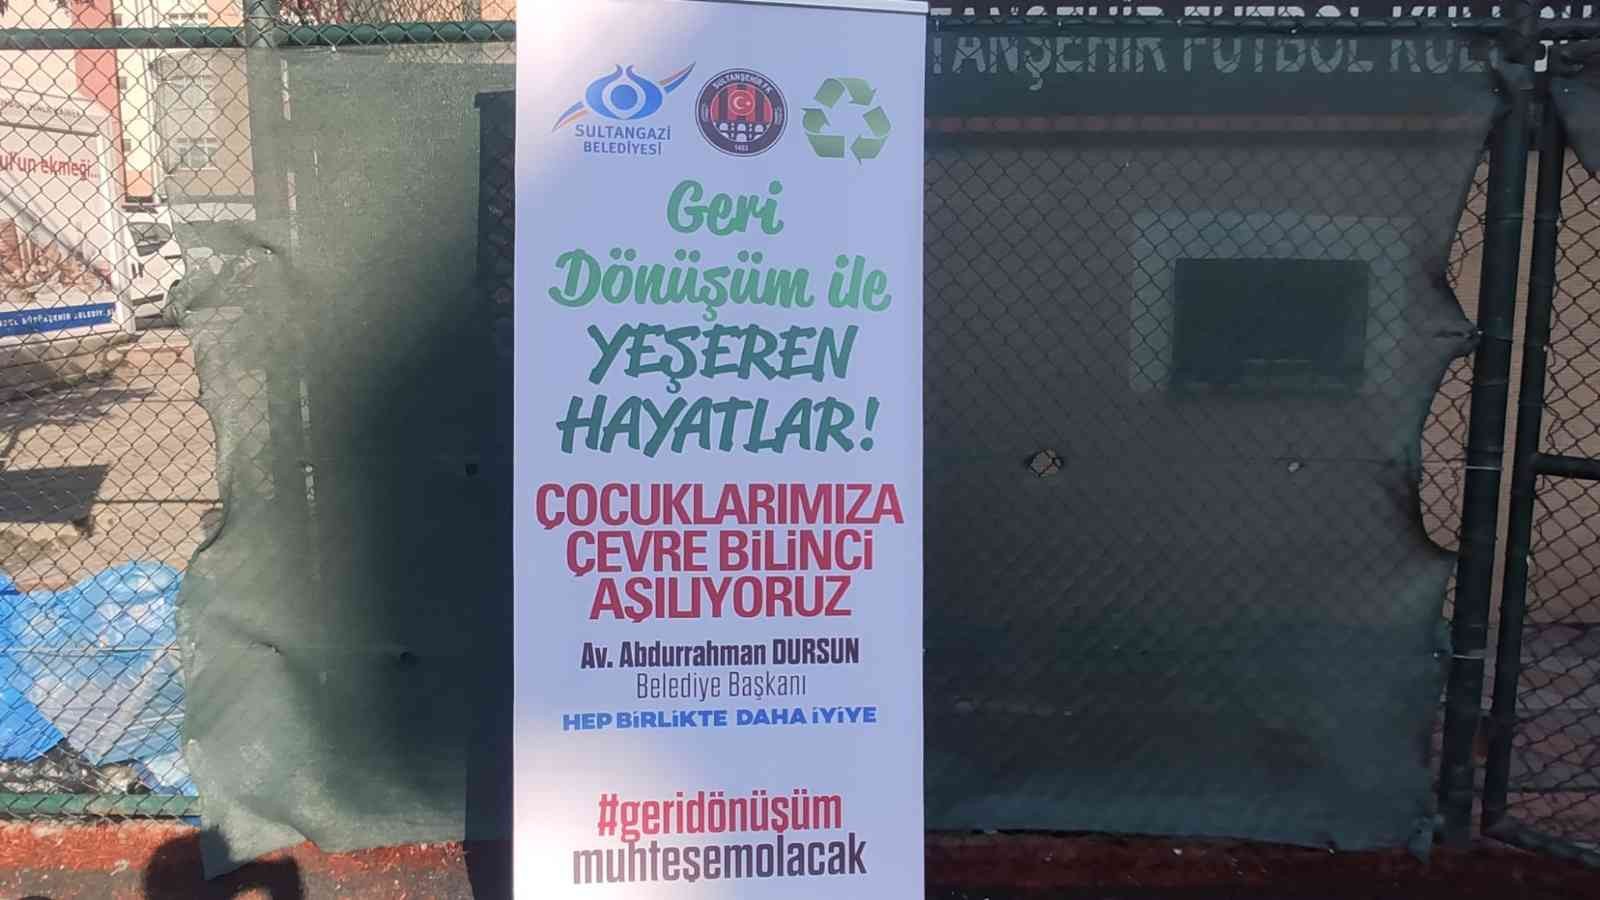 Sultangazi Belediyesi ve Sultanşehir Futbol Kulübü’nün ortaklaşa yürüttüğü proje kapsamında evlerden toplanan atıkları yetkililere teslim eden ...